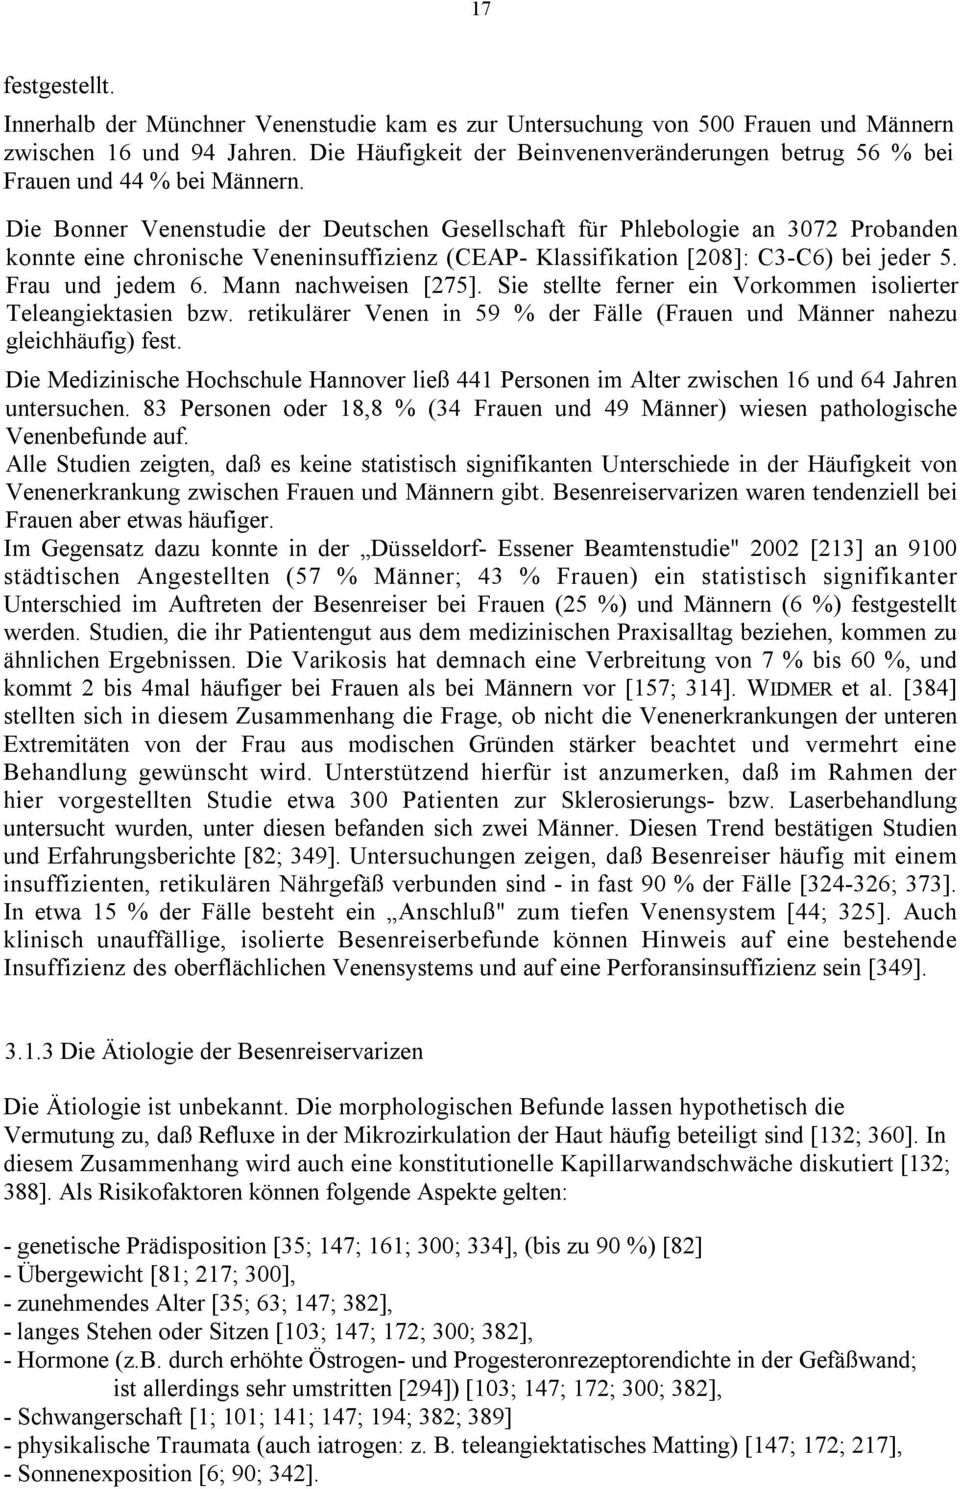 Die Bonner Venenstudie der Deutschen Gesellschaft für Phlebologie an 3072 Probanden konnte eine chronische Veneninsuffizienz (CEAP- Klassifikation [208]: C3-C6) bei jeder 5. Frau und jedem 6.